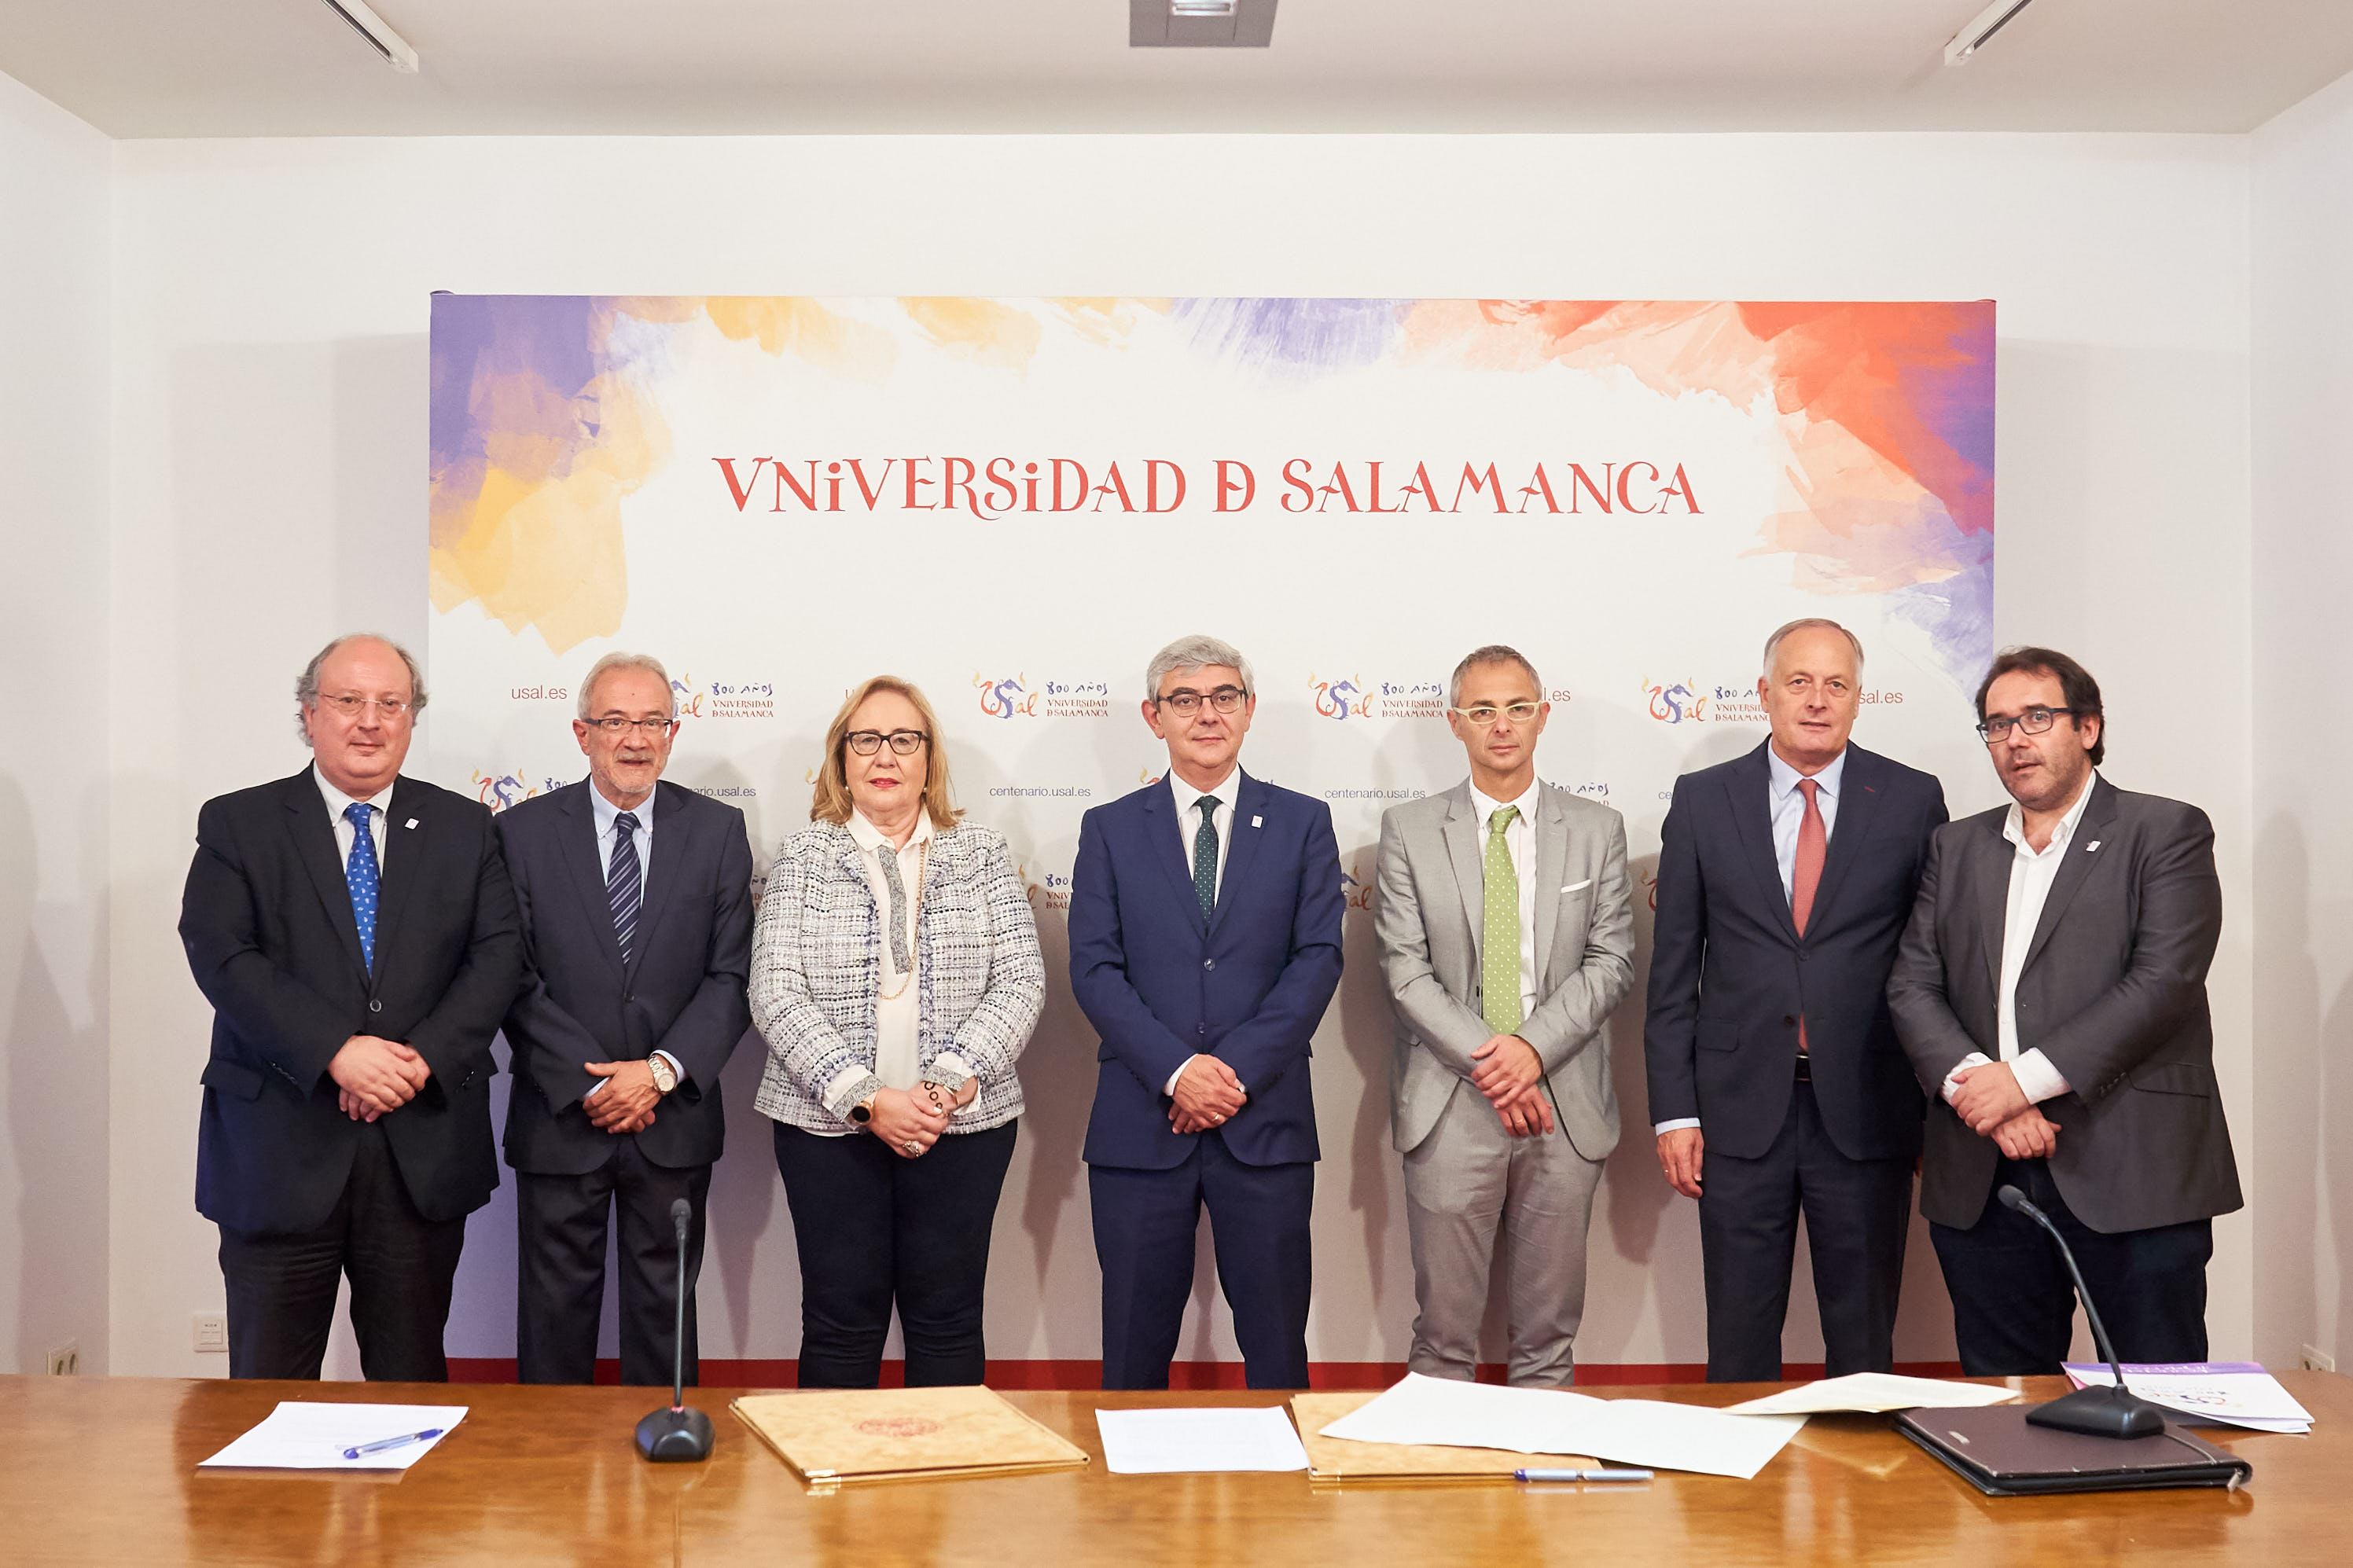 Gadis incrementa su compromiso con el VIII Centenario de la Universidad de Salamanca